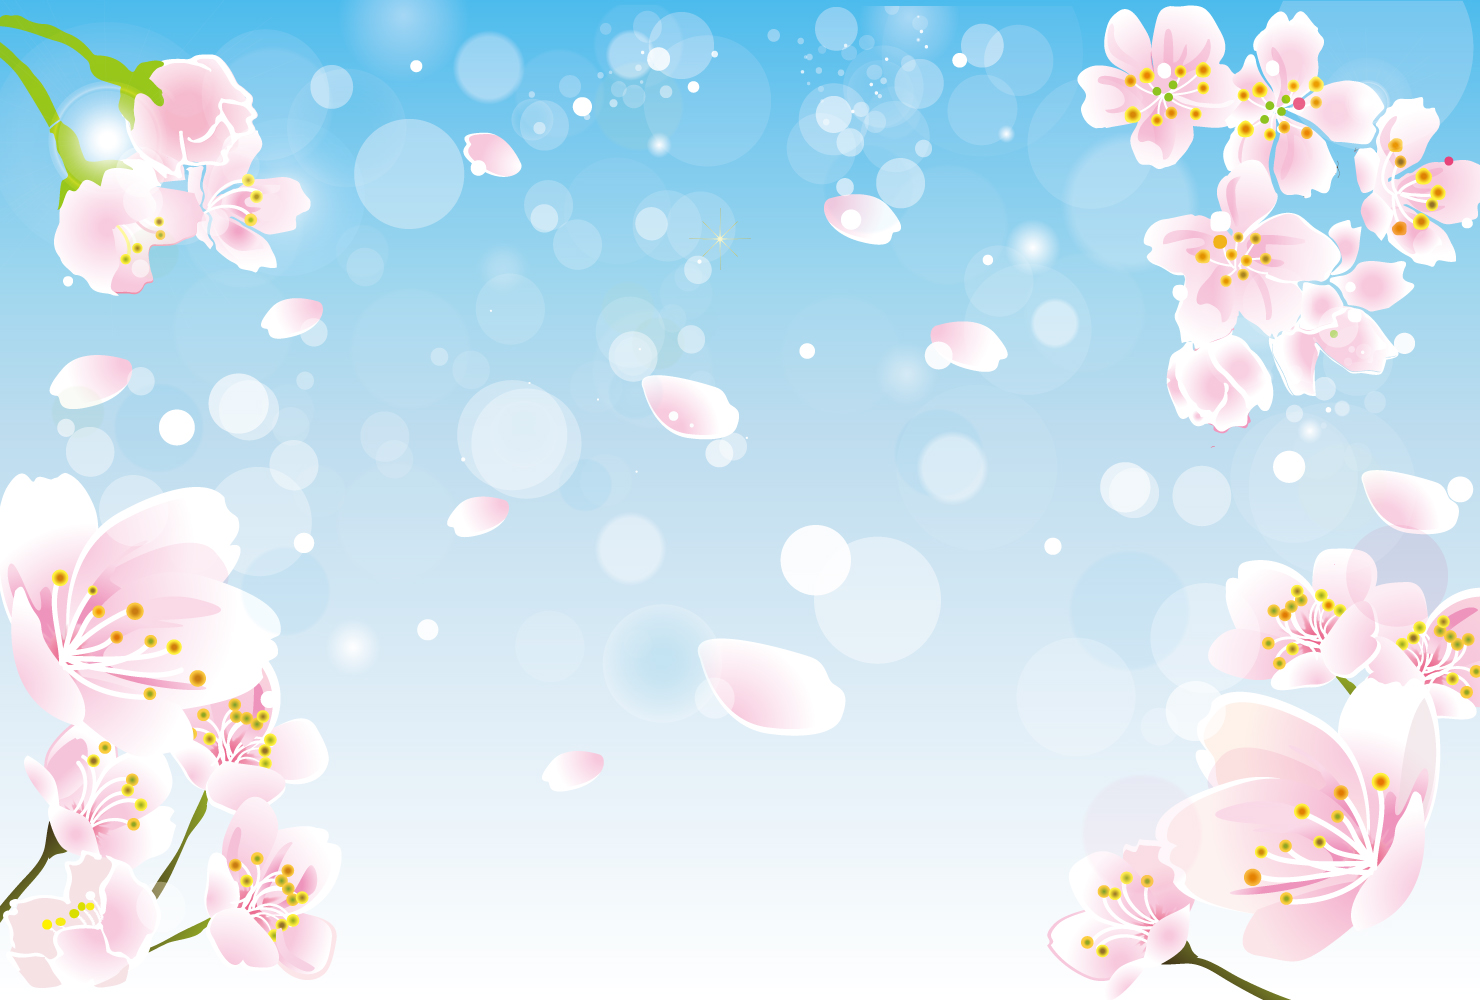 青空と桜の花の背景イラスト